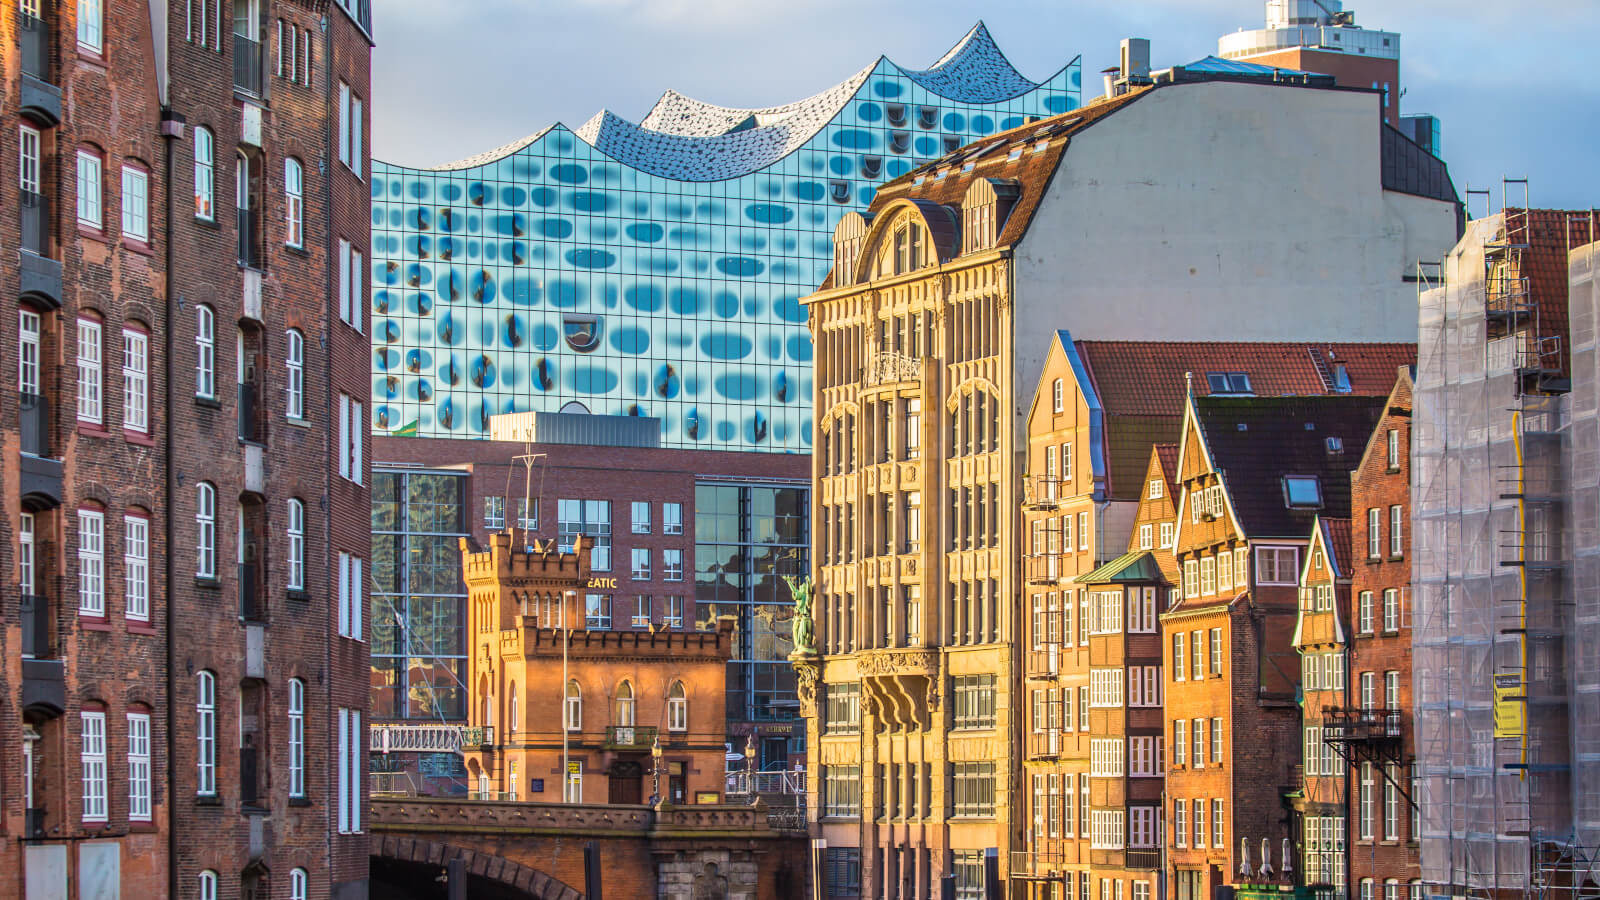 Hamburg: Speicherstadt and Elbphilharmonie